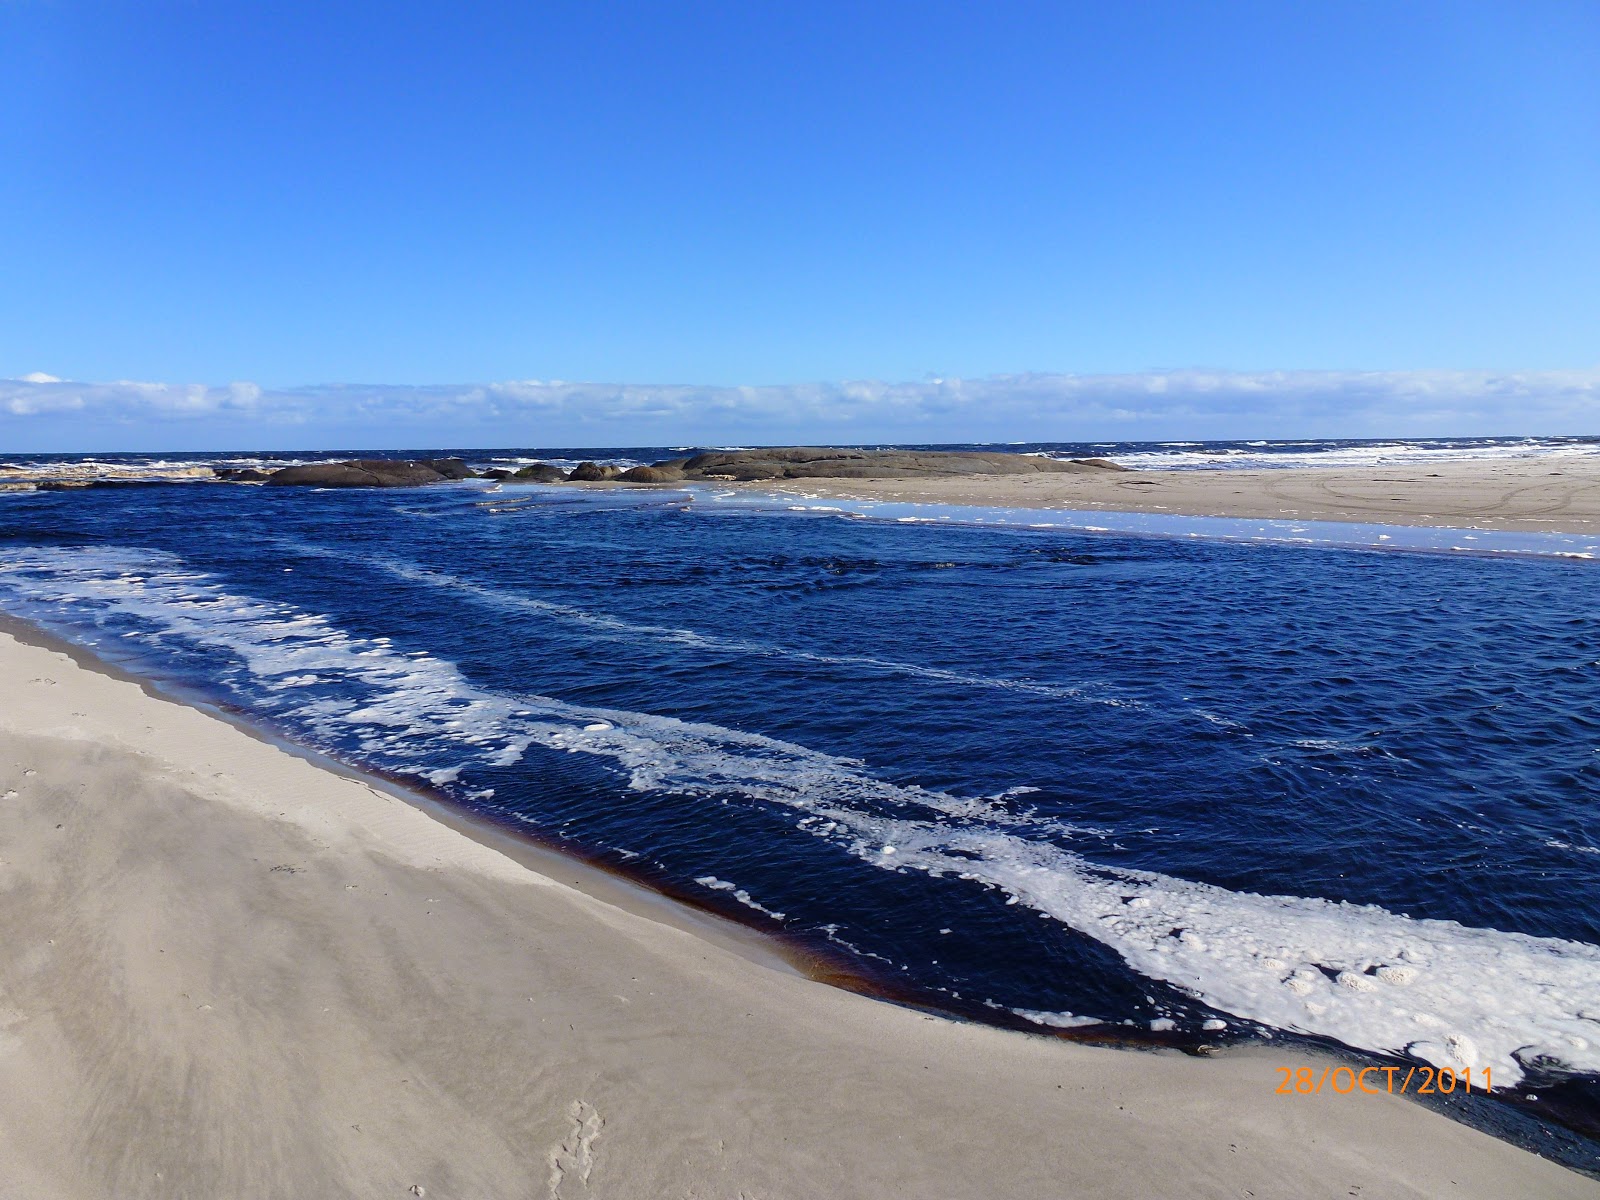 Zdjęcie Gardner Beach z powierzchnią jasny piasek